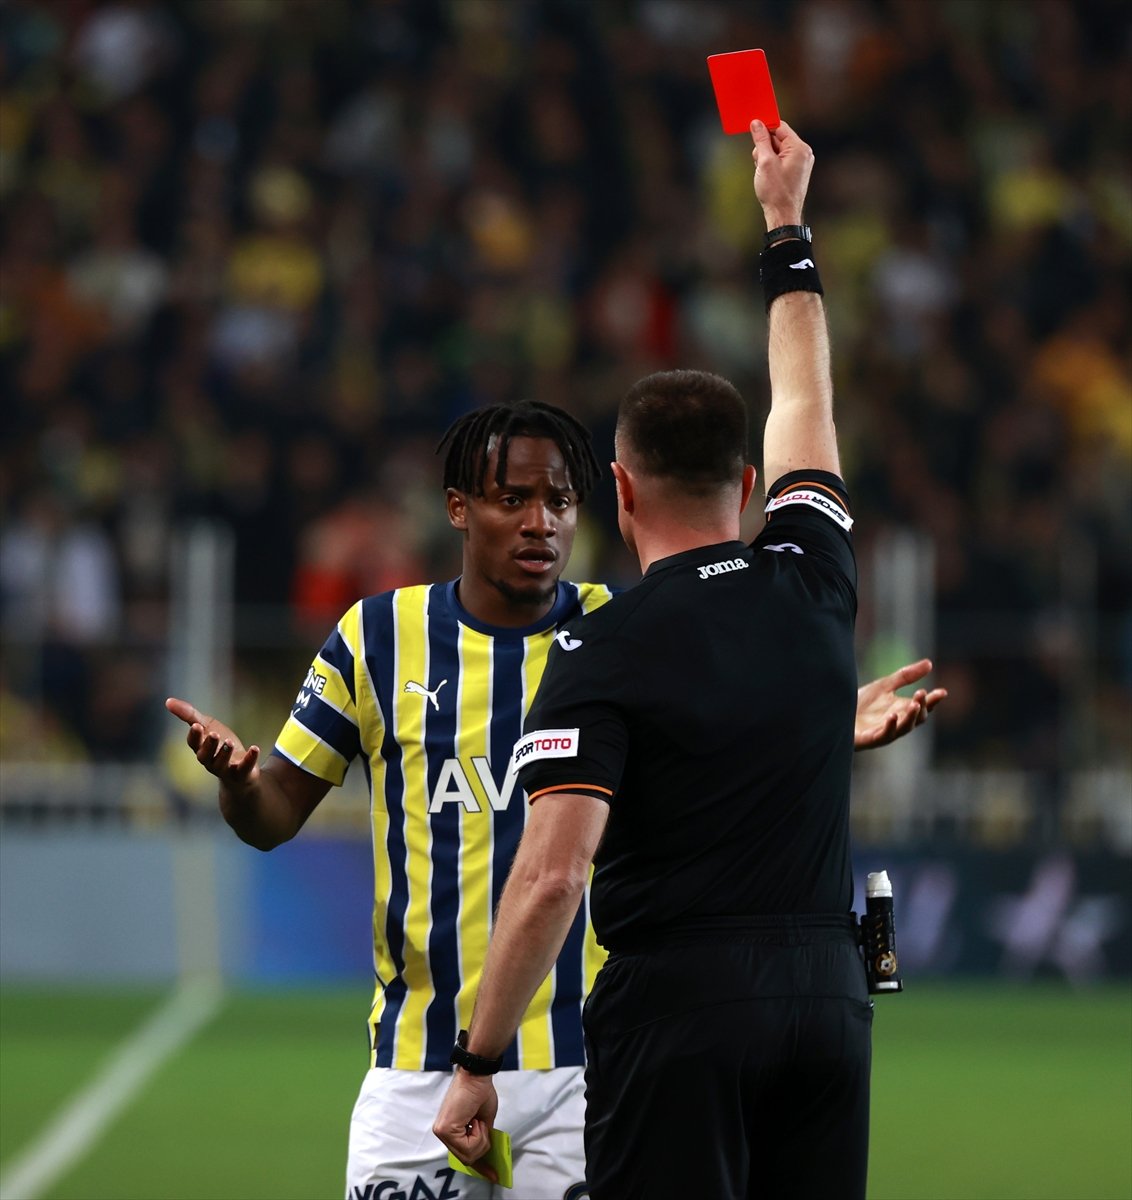 Fenerbahçe, Sivasspor u tek golle mağlup etti #2